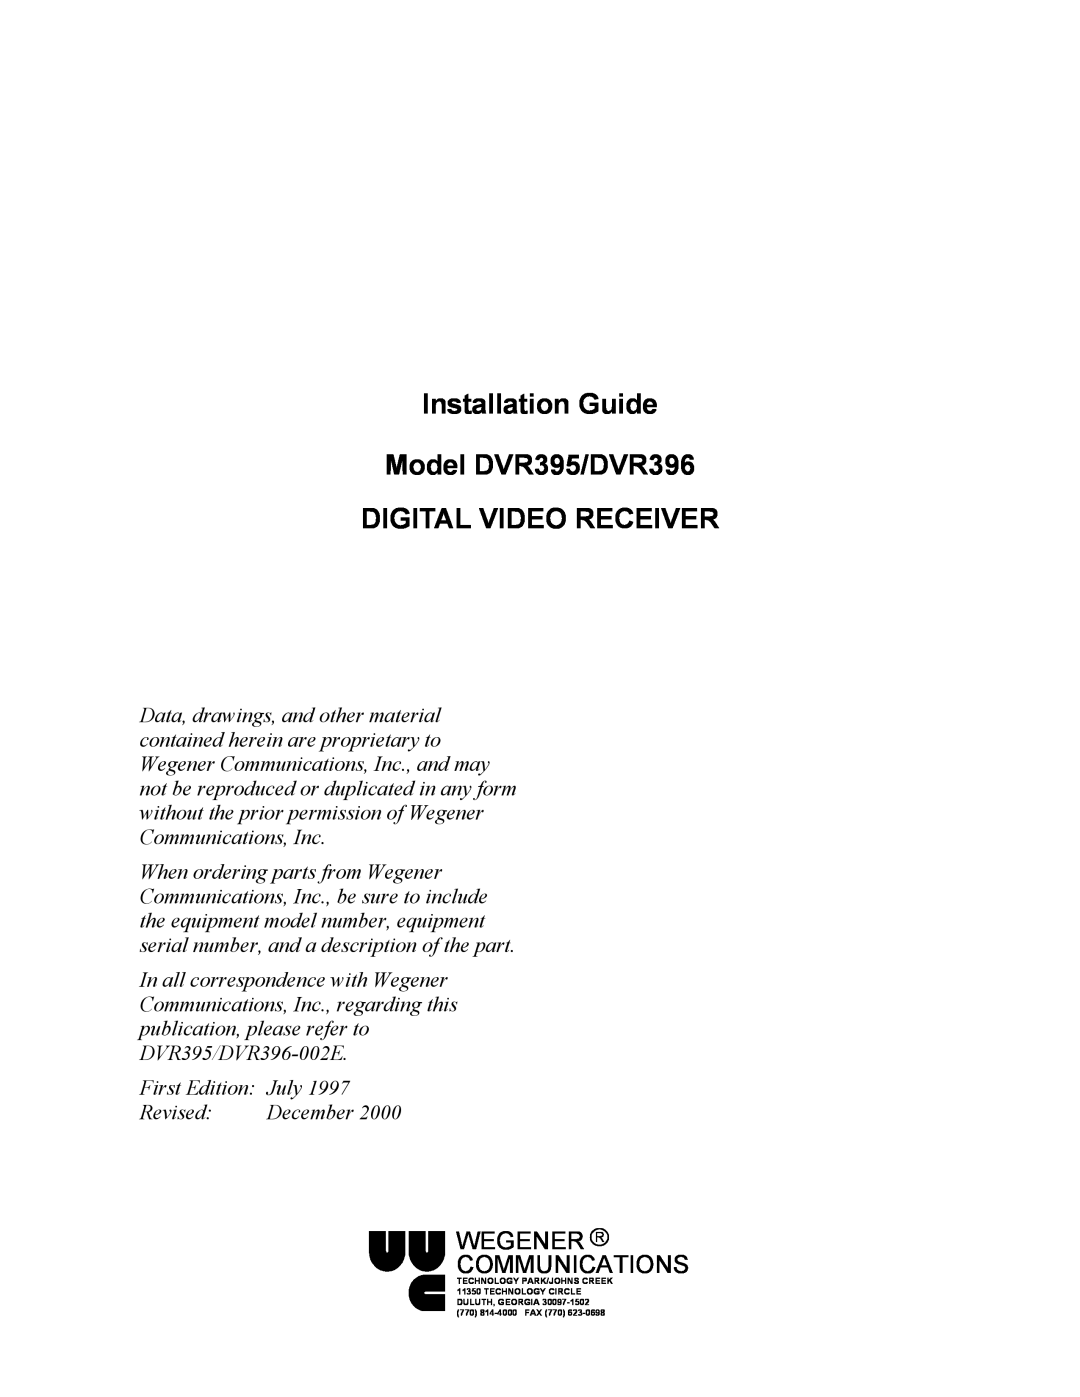 Wegener Communications manual Installation Guide Model DVR395/DVR396, Digital Video Receiver, Wegener R Communications 